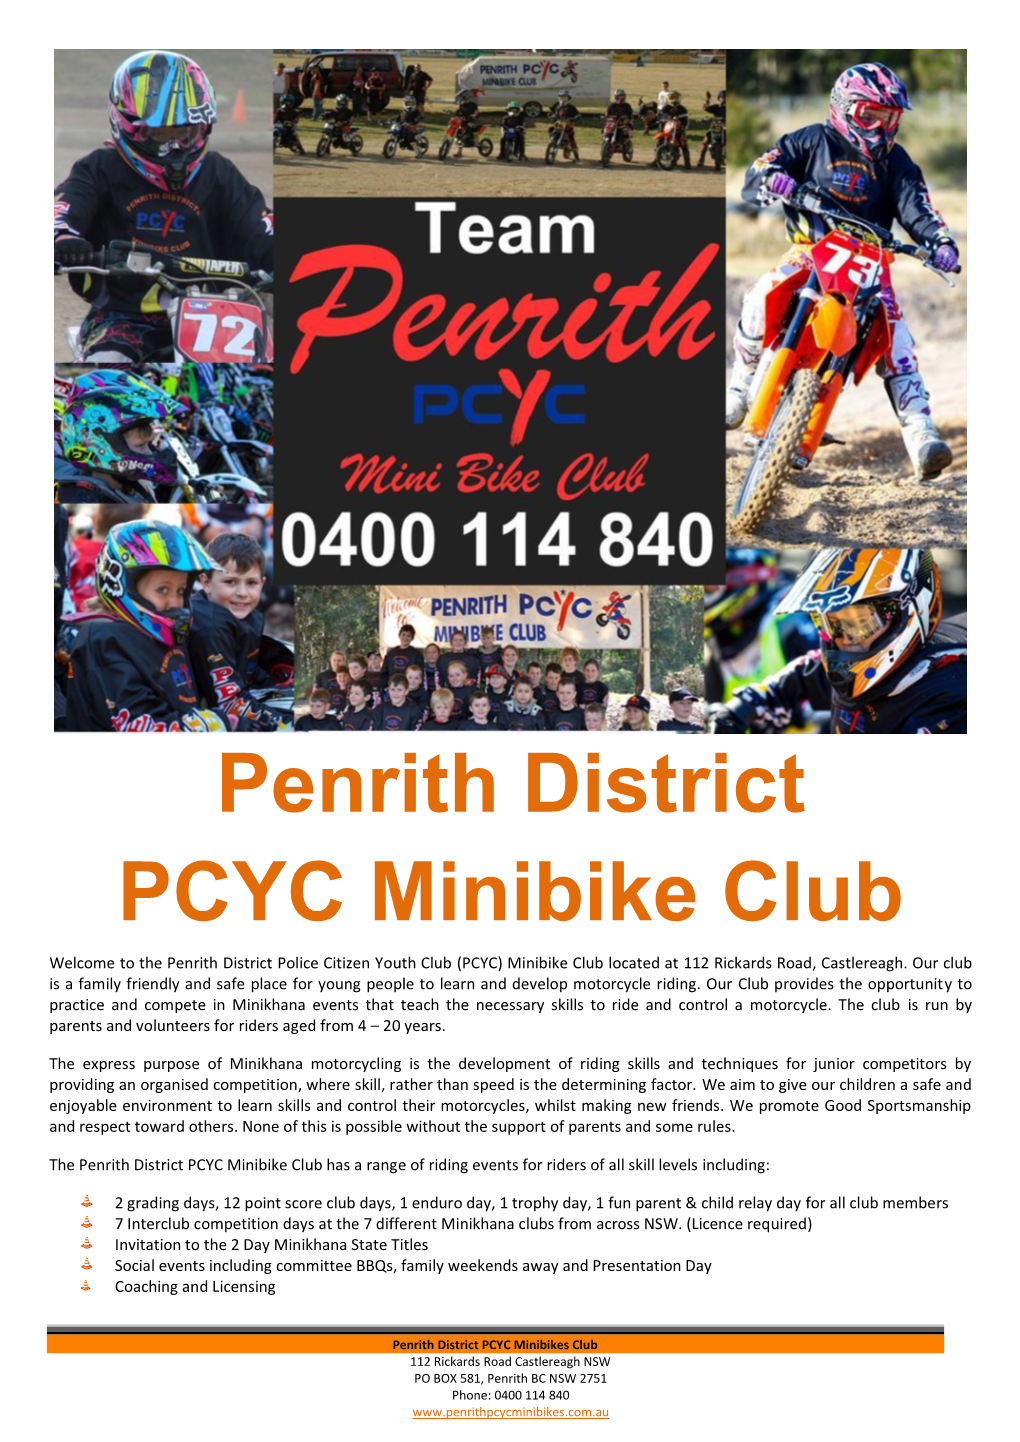 Penrith PCYC Minibike Club